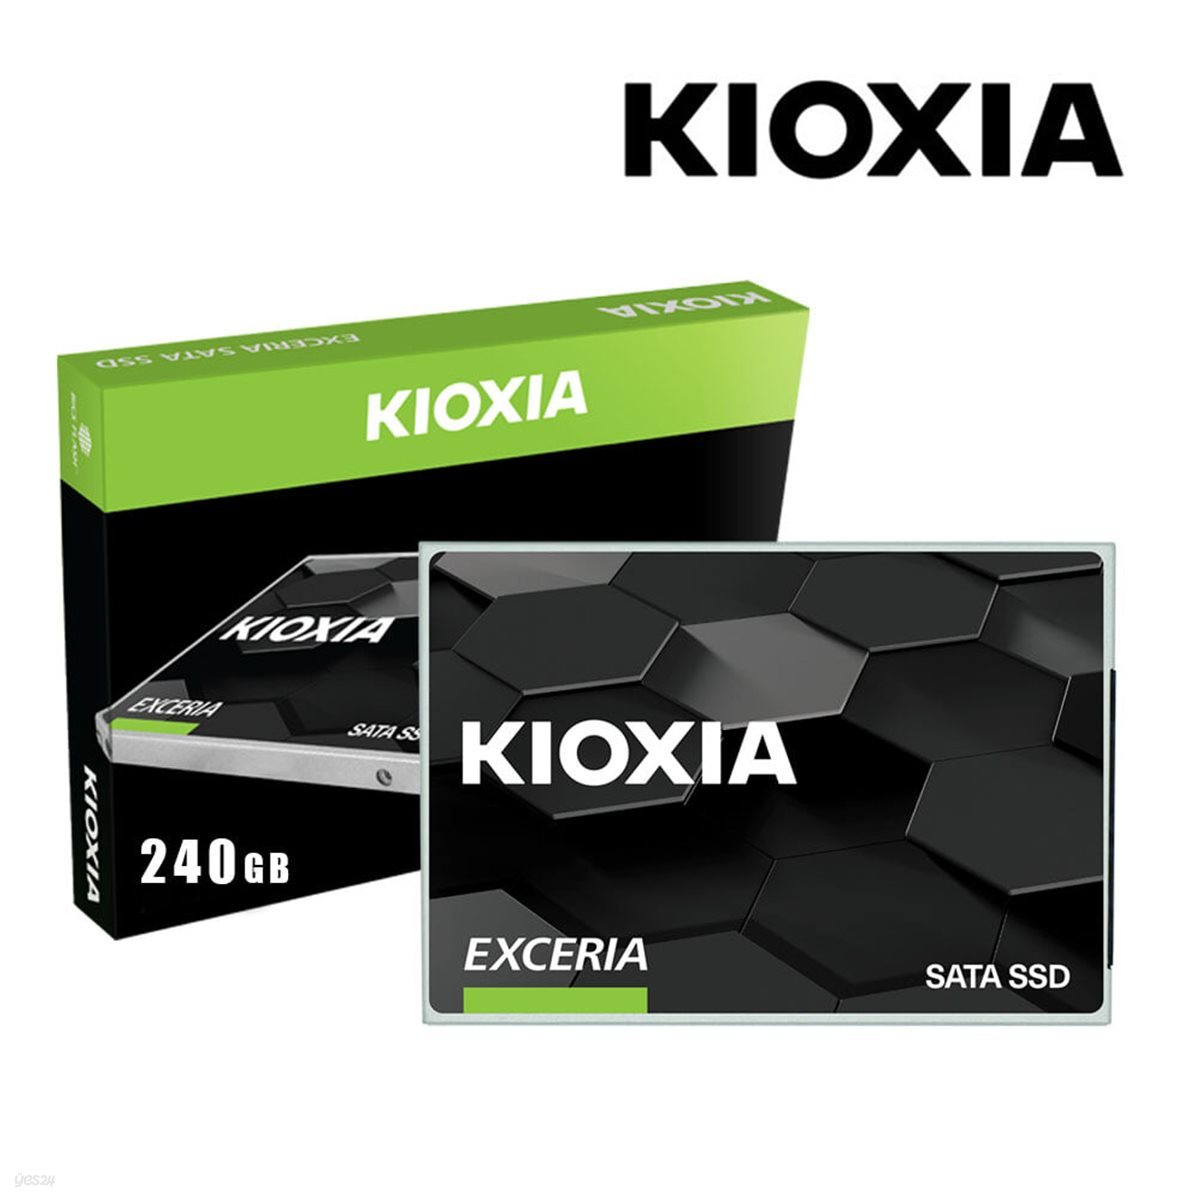 키오시아 EXCERIA SATA SSD 240GB